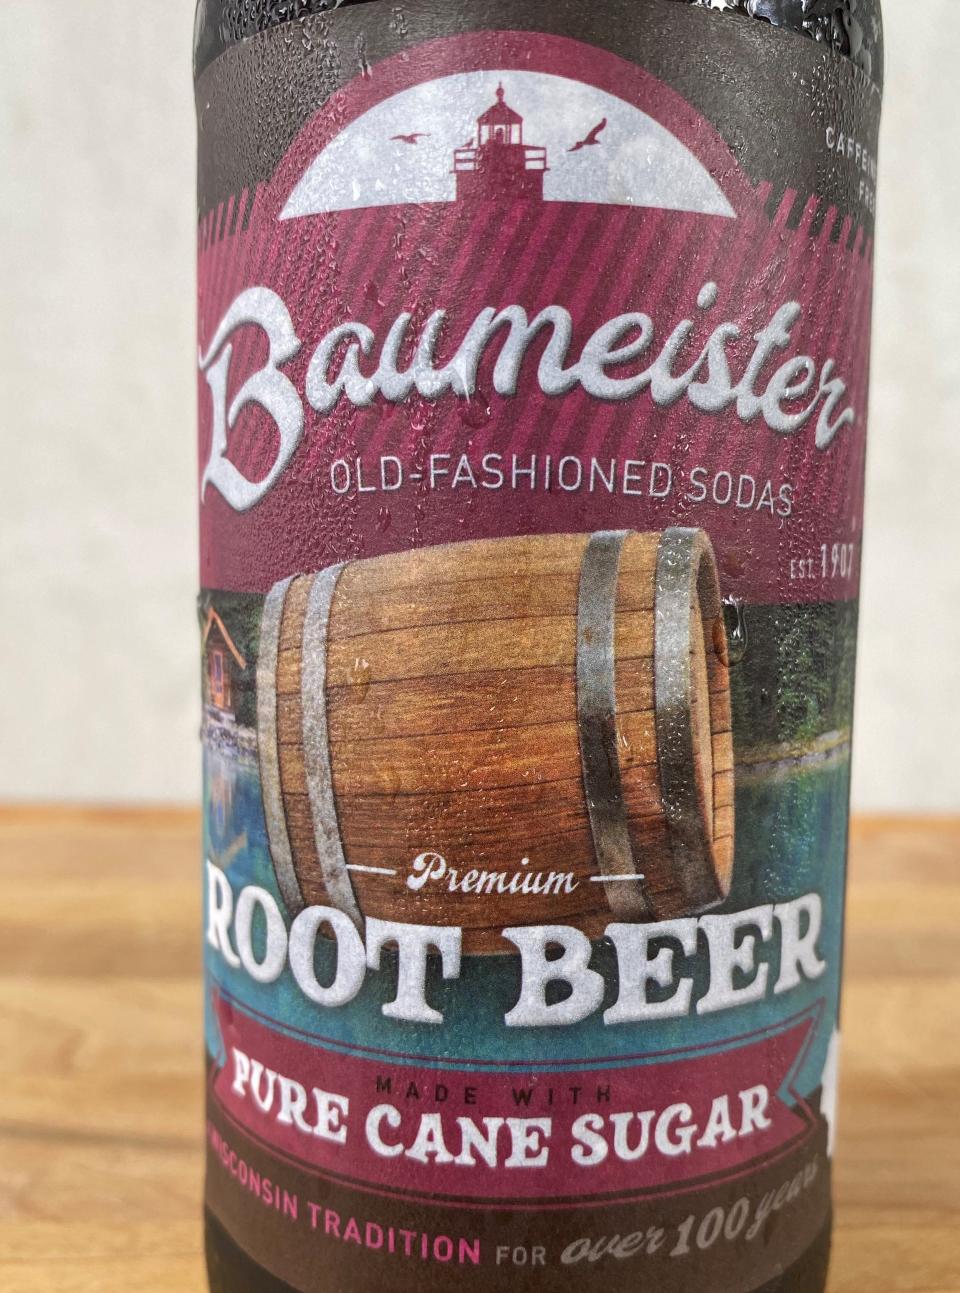 Baumeister Root Beer